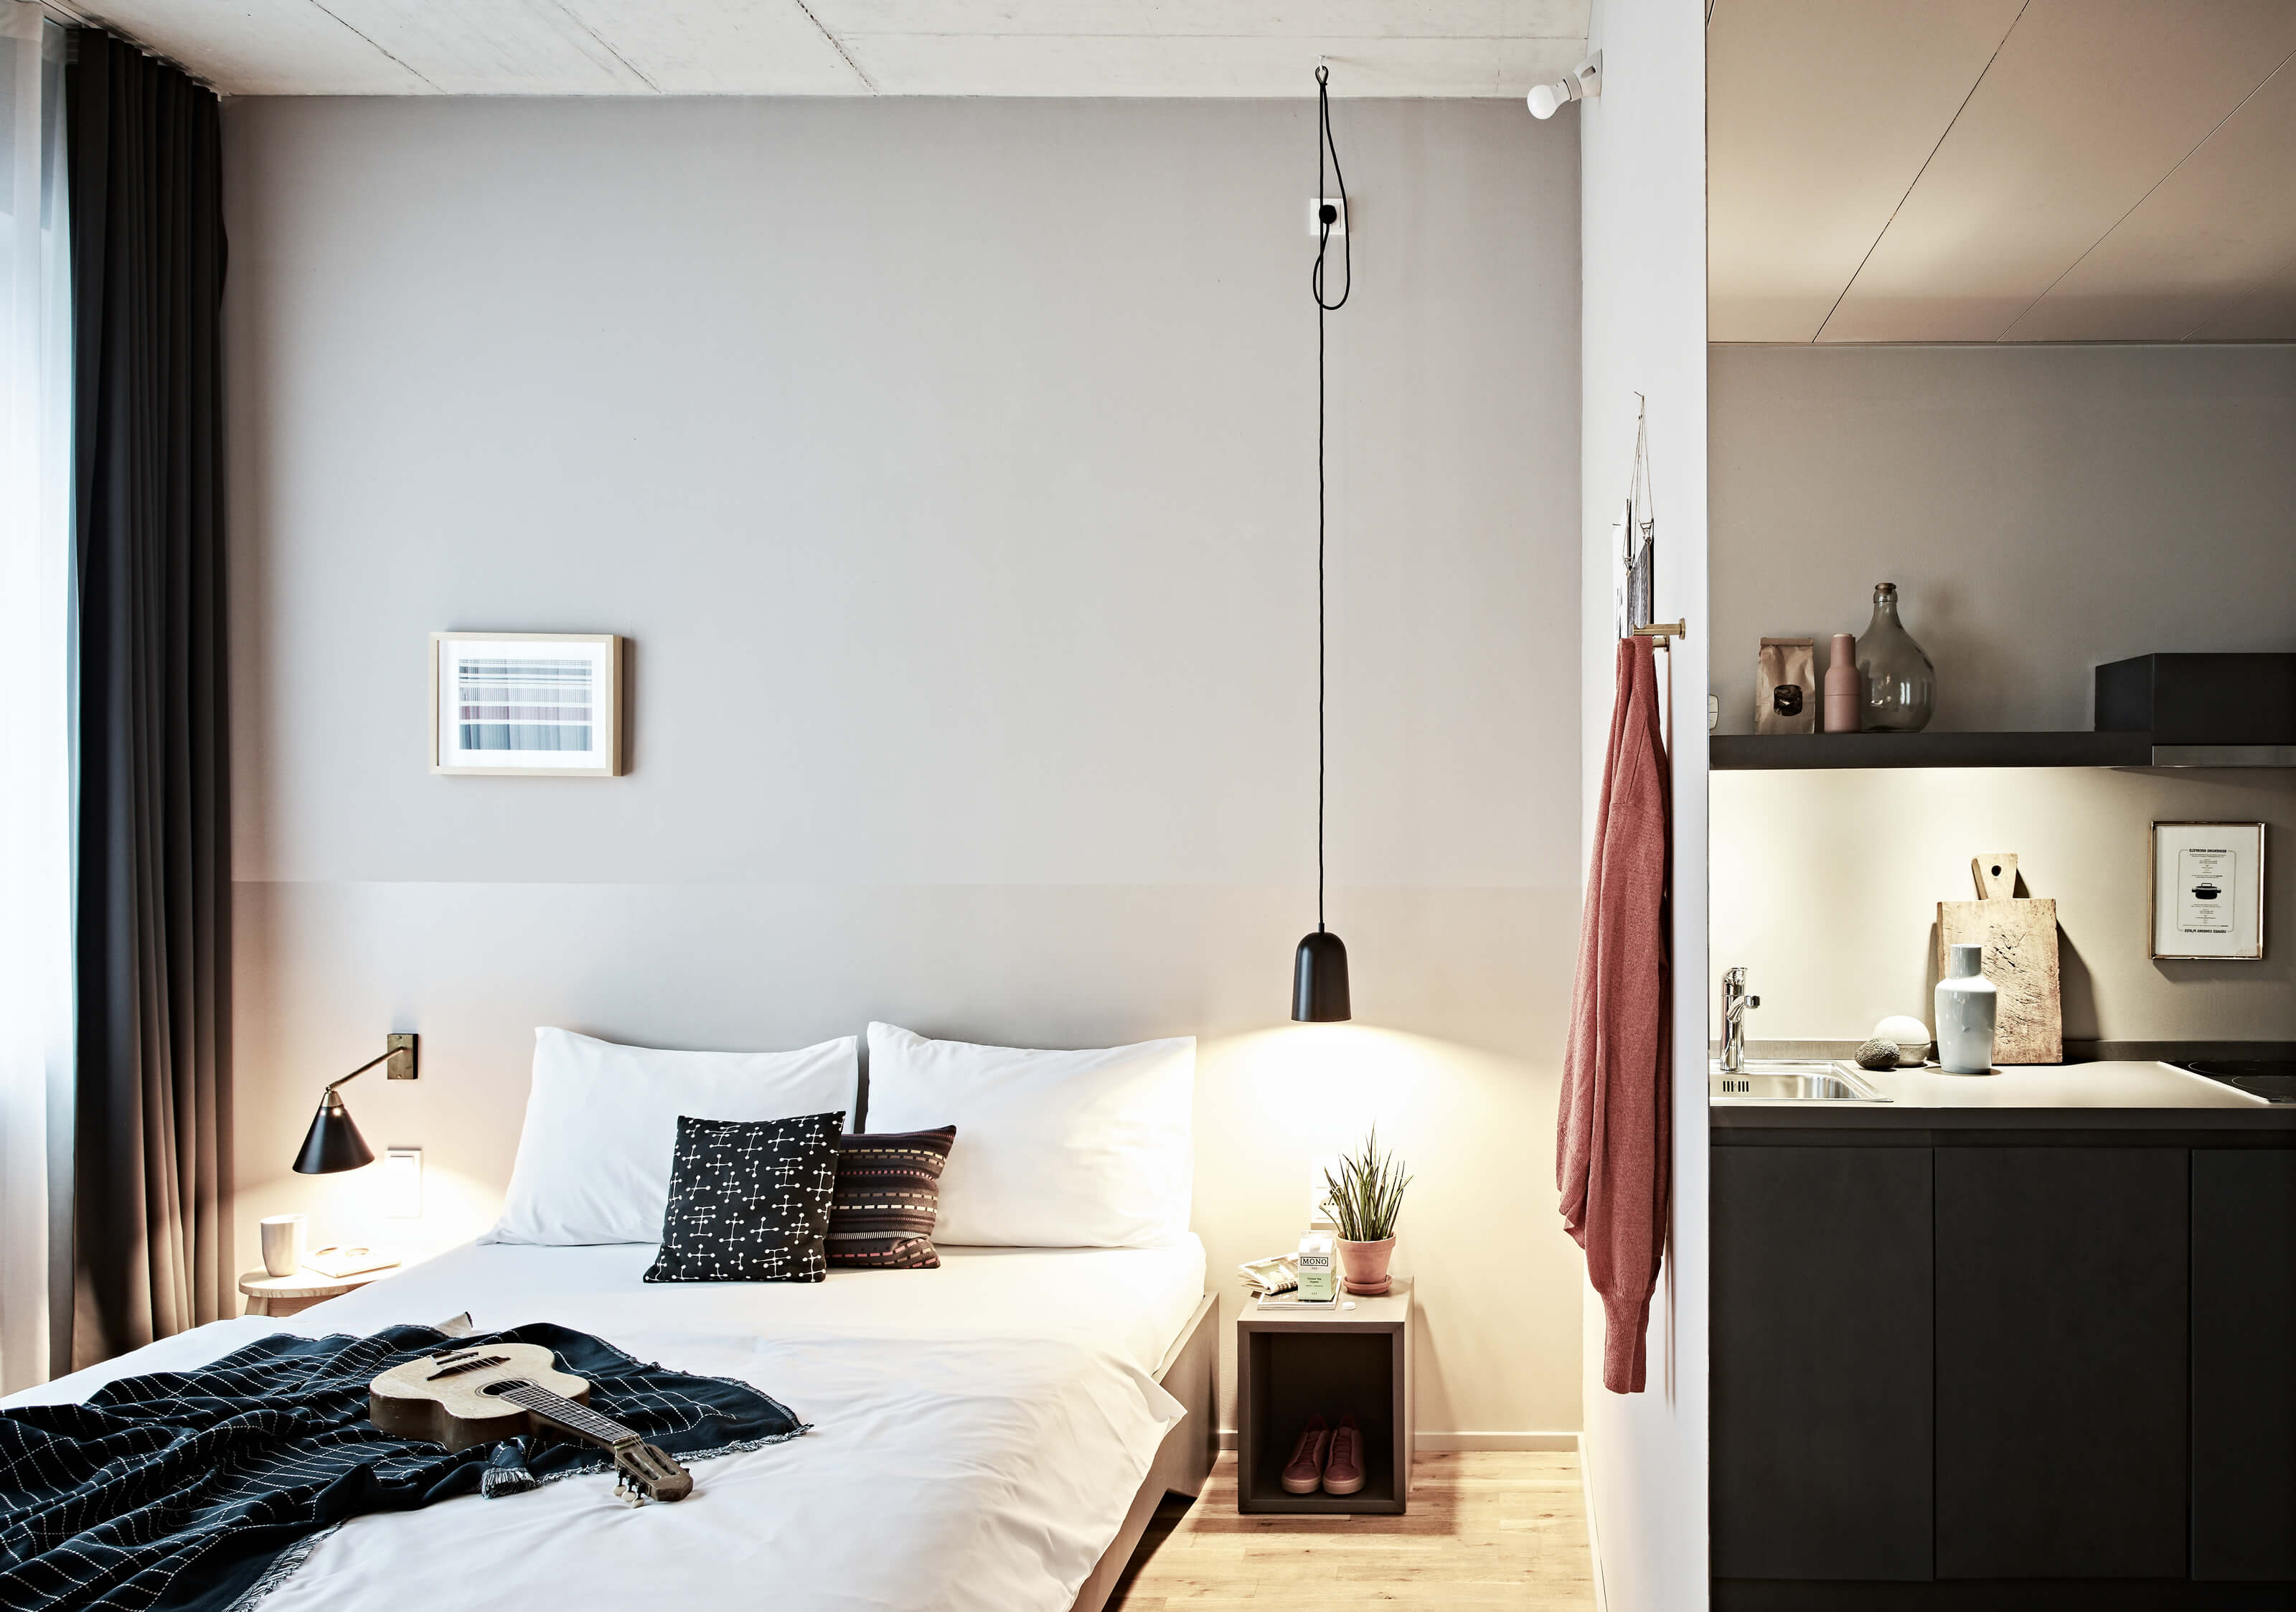 Helles Zimmer mit Holzboden, mittig ein weiß bezogenes Doppelbett und Accessoires, links große Fenster mit Vorhängen, rechts, hinter einer Wand befindet sich eine Kitchenette.